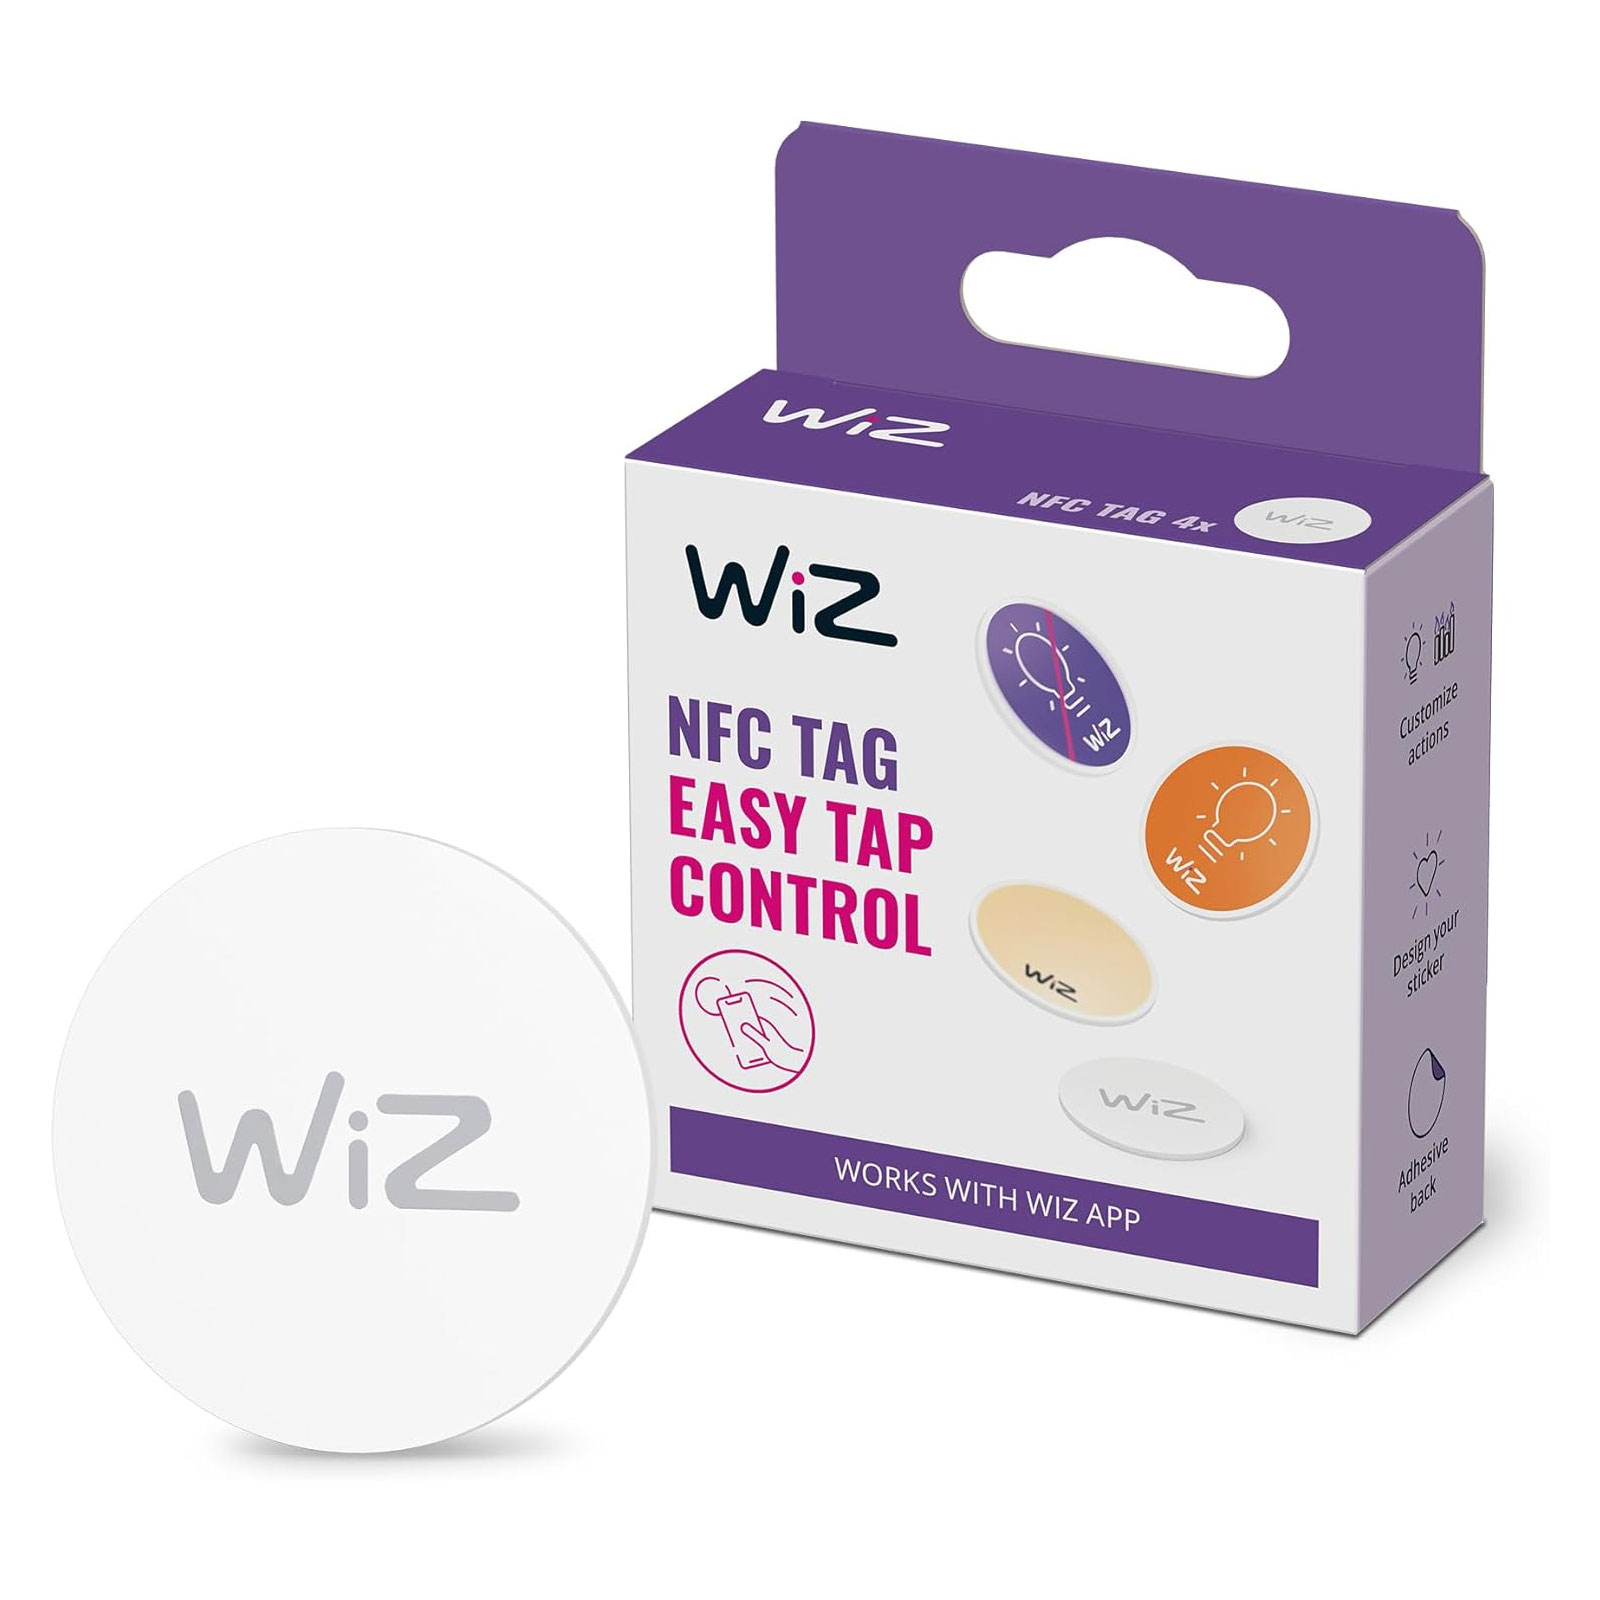 WiZ NFC tag